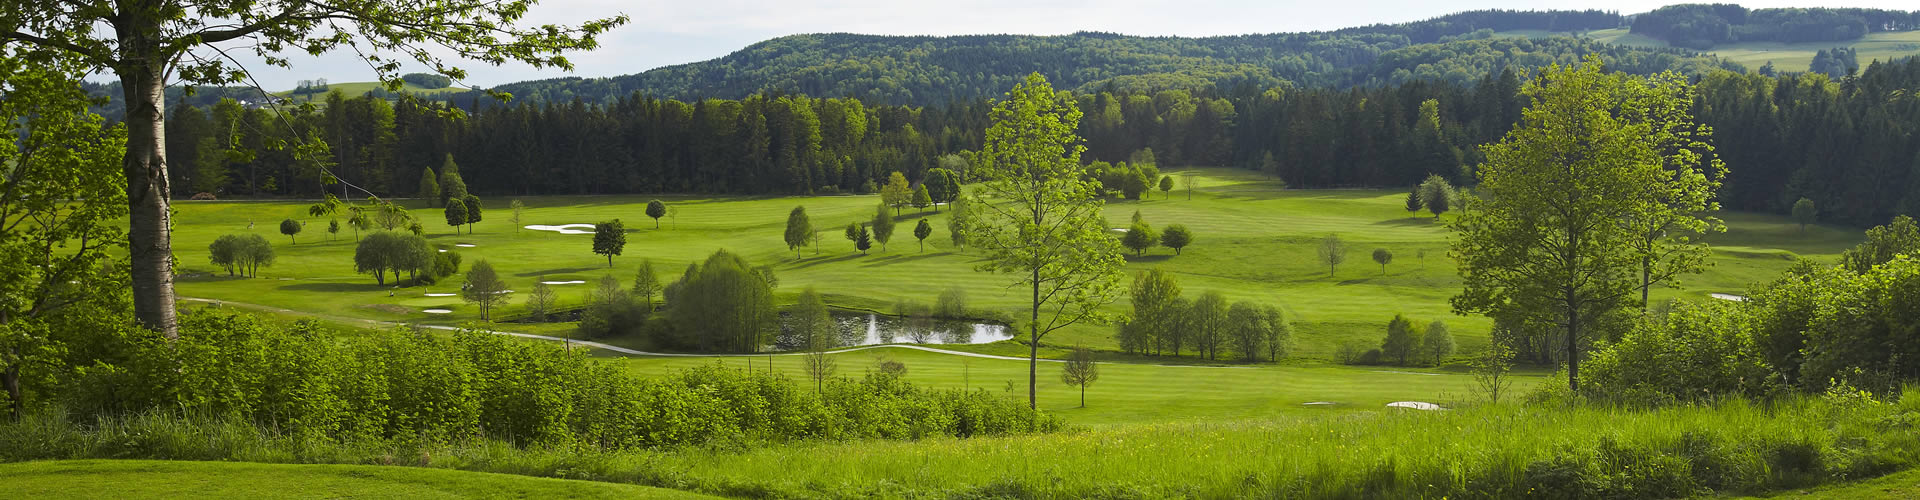 Golf Böhmerwald